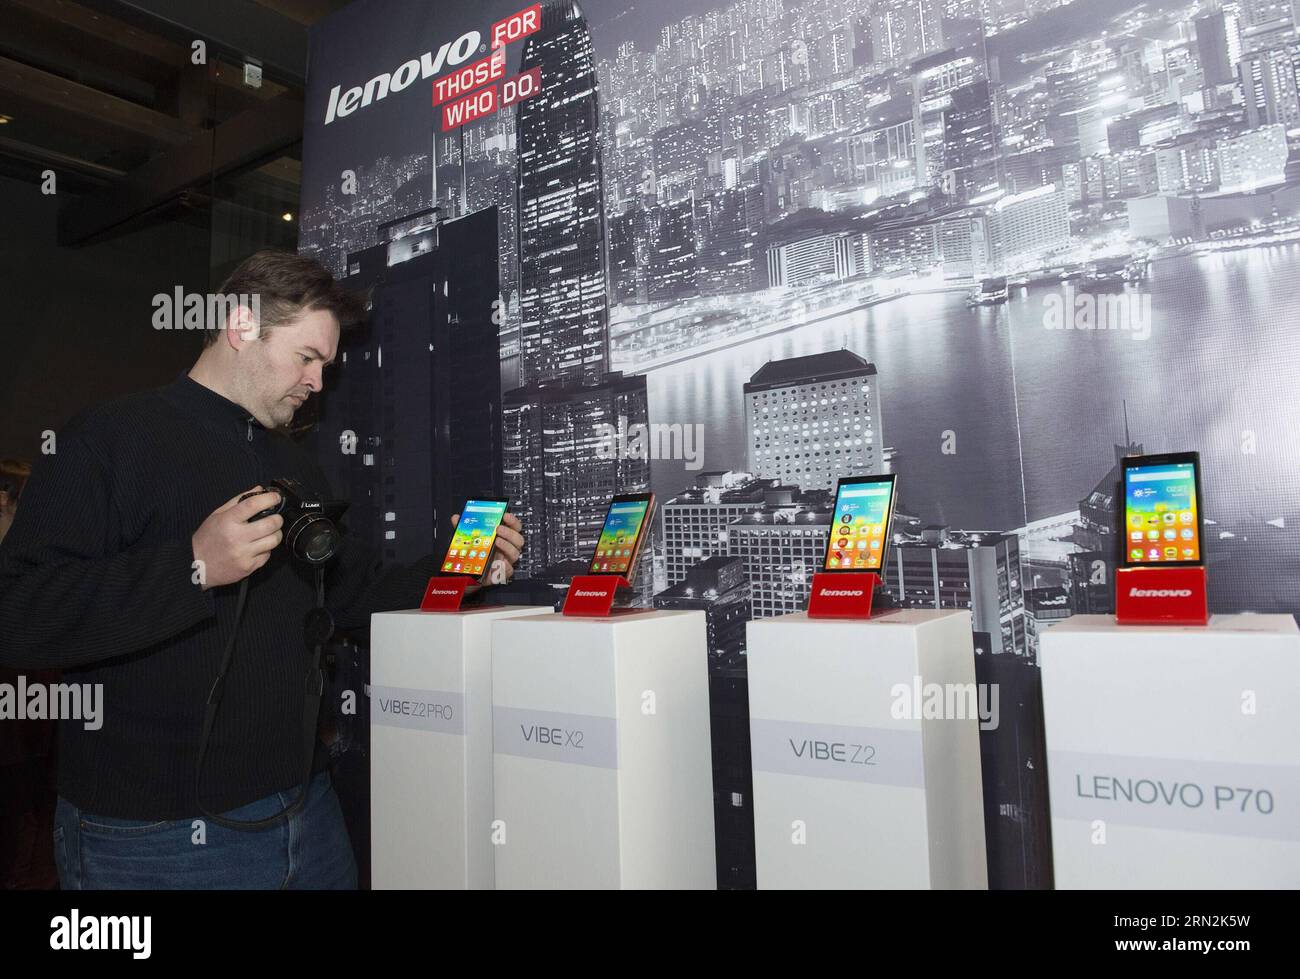 (150312) -- ZAGREB, 12. März 2015 -- Ein Journalist betrachtet Lenovo Smartphones während einer Präsentation in Zagreb, Kroatien, 12. März 2015. Lenovo, ein chinesischer Technologie-Gigant, hat am Donnerstag in Kroatien eine neue Reihe von sechs Smartphones eingeführt - VIBE Z2 pro, VIBE Z2, VIBE X2, Lenovo P70, Lenovo S90 und Lenovo A536. ) (Zjy) CROATIA-ZAGREB-LENOVO-SMARTPHONE LAUNCH MisoxLisanin PUBLICATIONxNOTxINxCHN Zagreb 12. März 2015 ein Journalist betrachtet LENOVO Smartphones während einer PRÄSENTATION in Zagreb Kroatien 12. März 2015 LENOVO, ein chinesischer Technologiegigant, hat eine neue Linie von sechs Smartphones Vibe Z2 pro V eingeführt Stockfoto